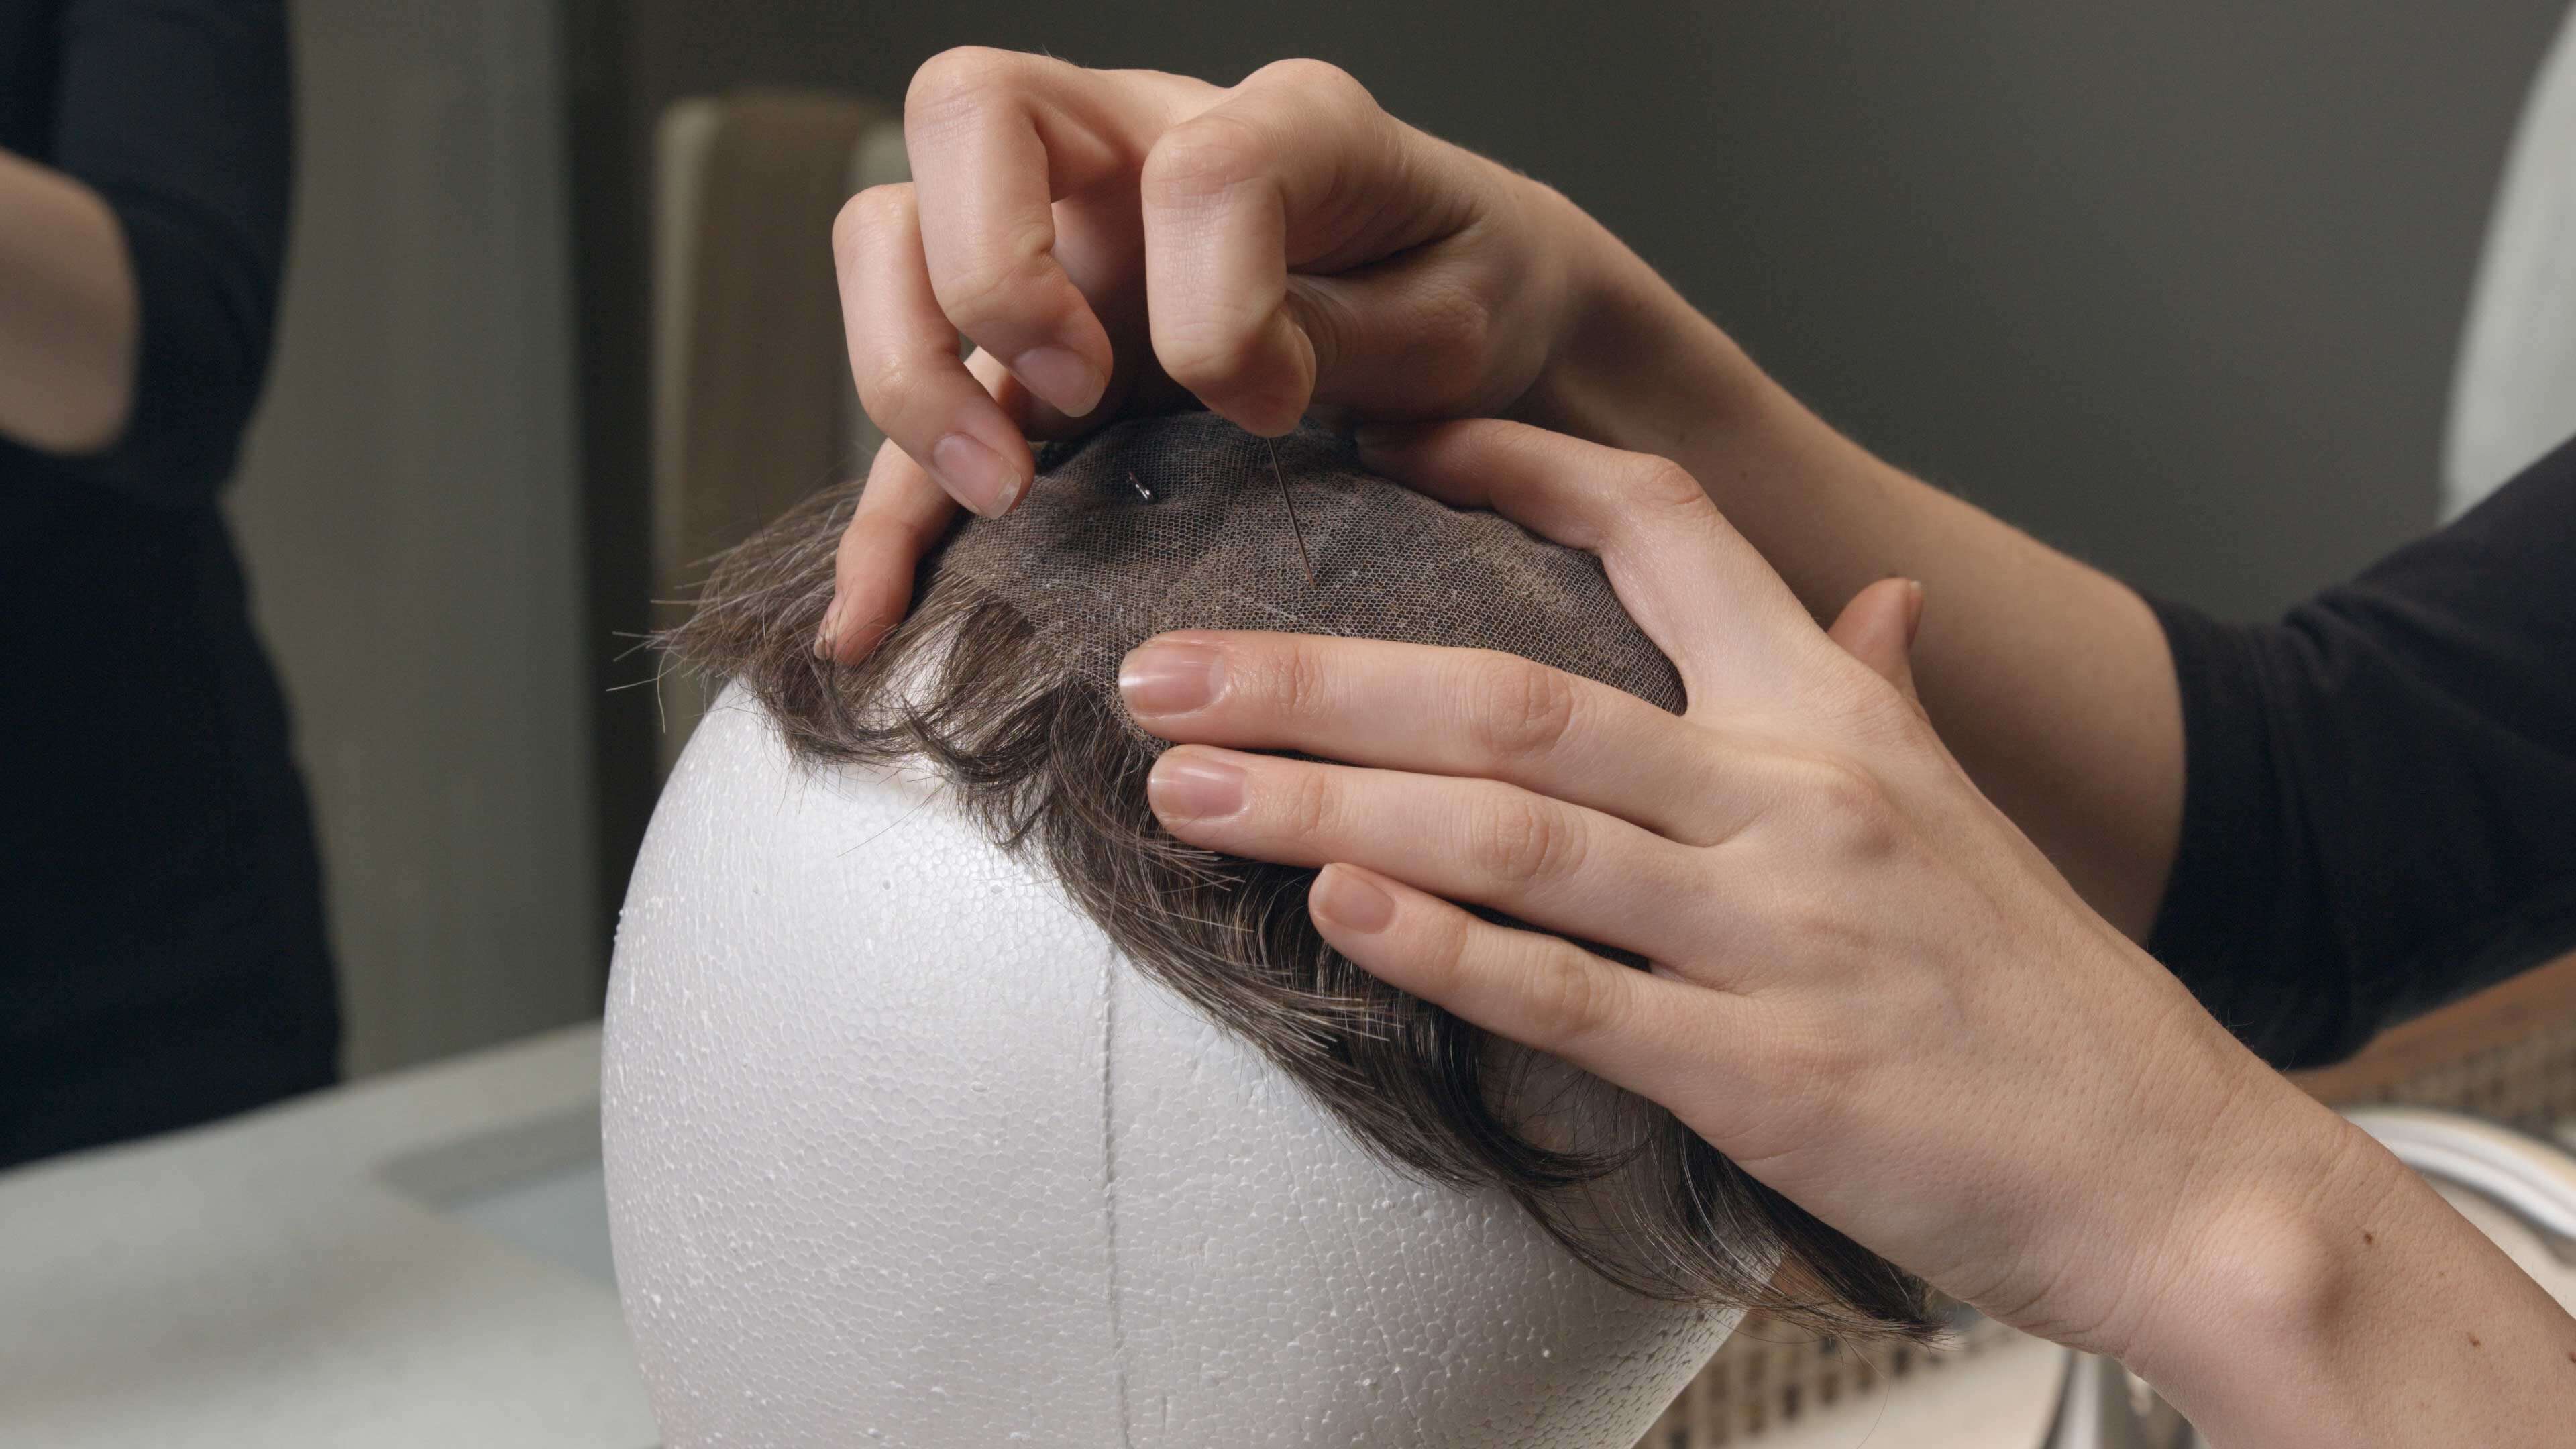 Protez Saç Uygulaması 1. Adım | Protez Saç Nasıl Bantlanır?